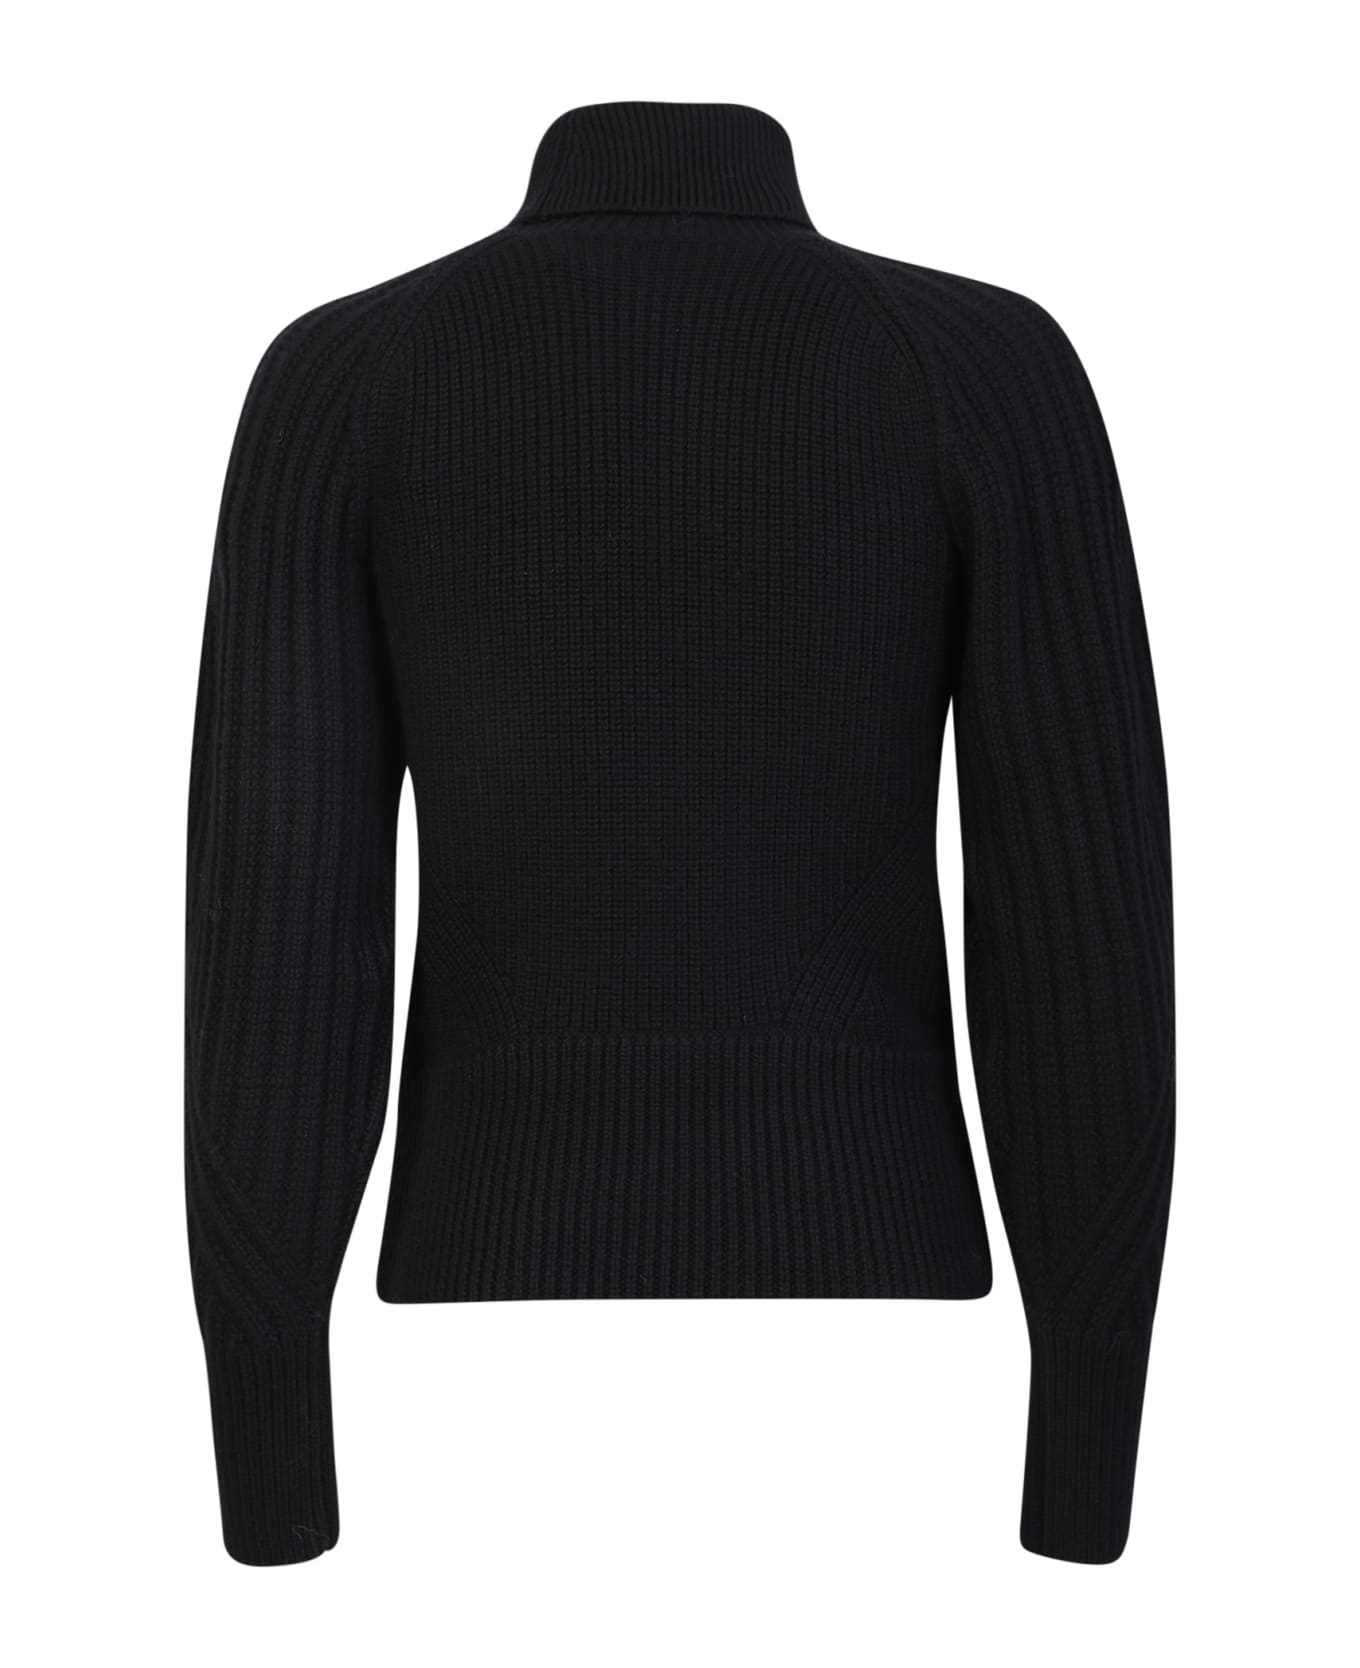 IRO Heart Neckline Wool Sweater In Black - Black